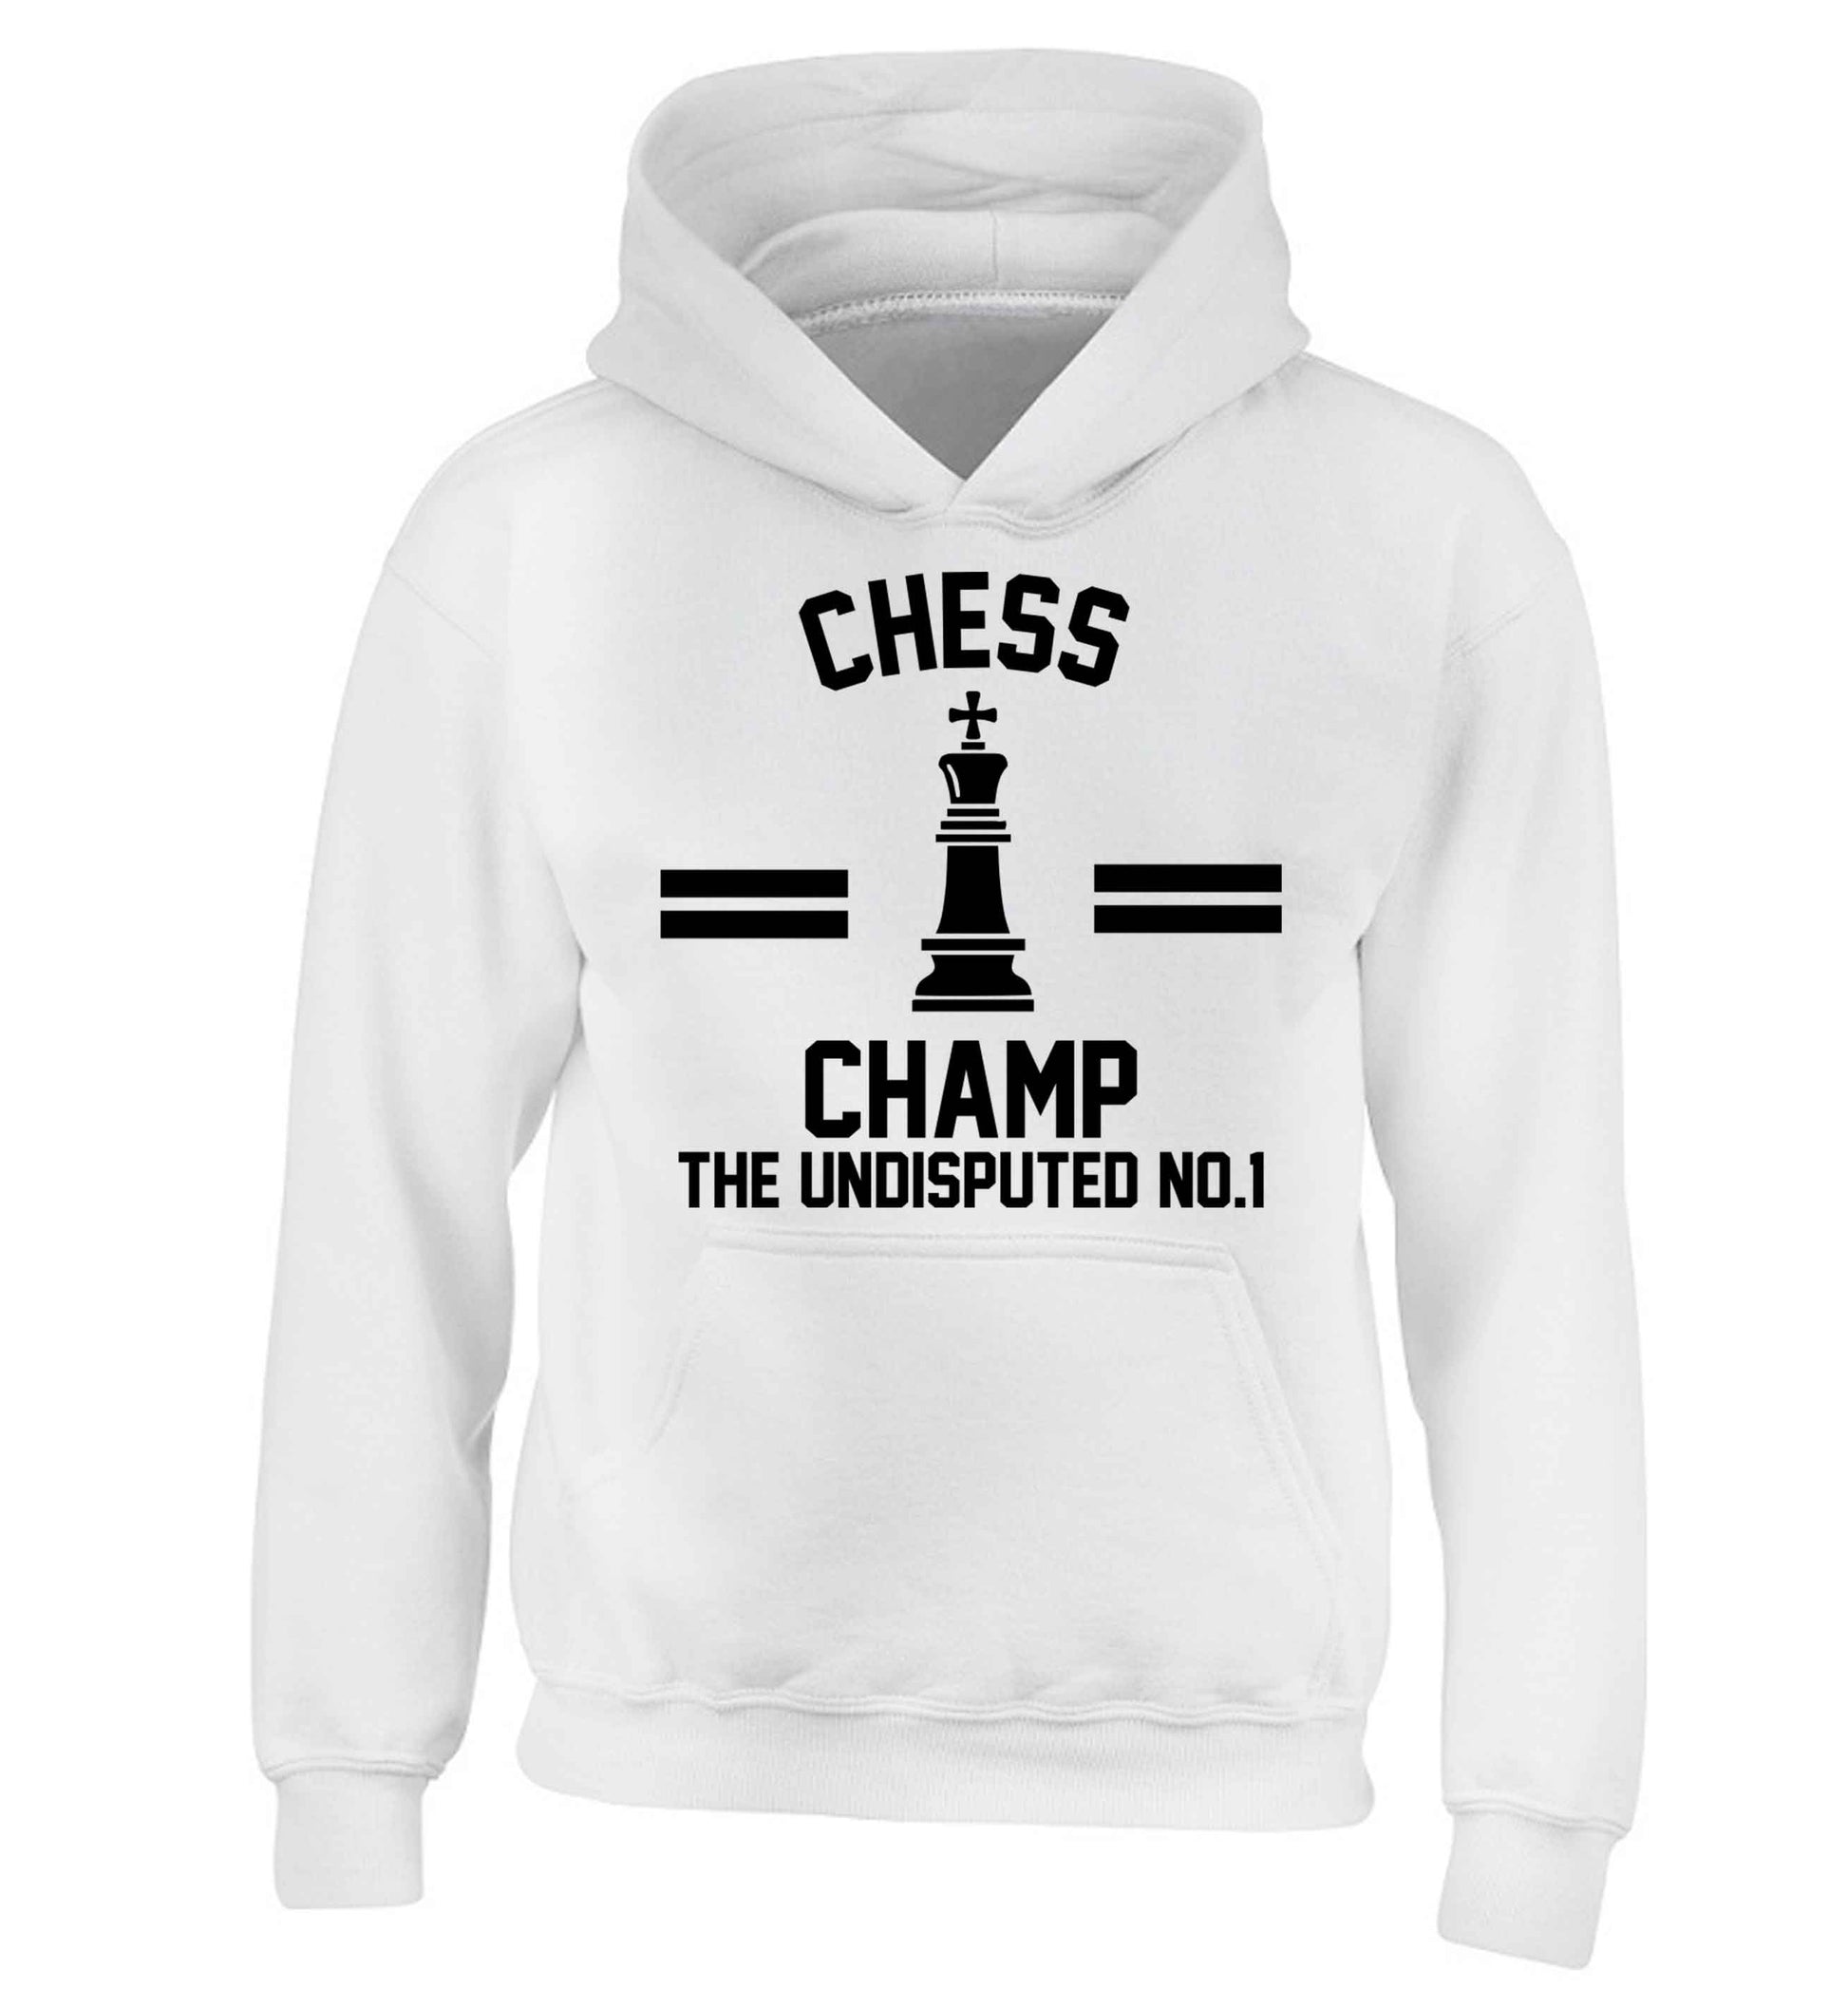 Undisputed chess championship no.1  children's white hoodie 12-13 Years